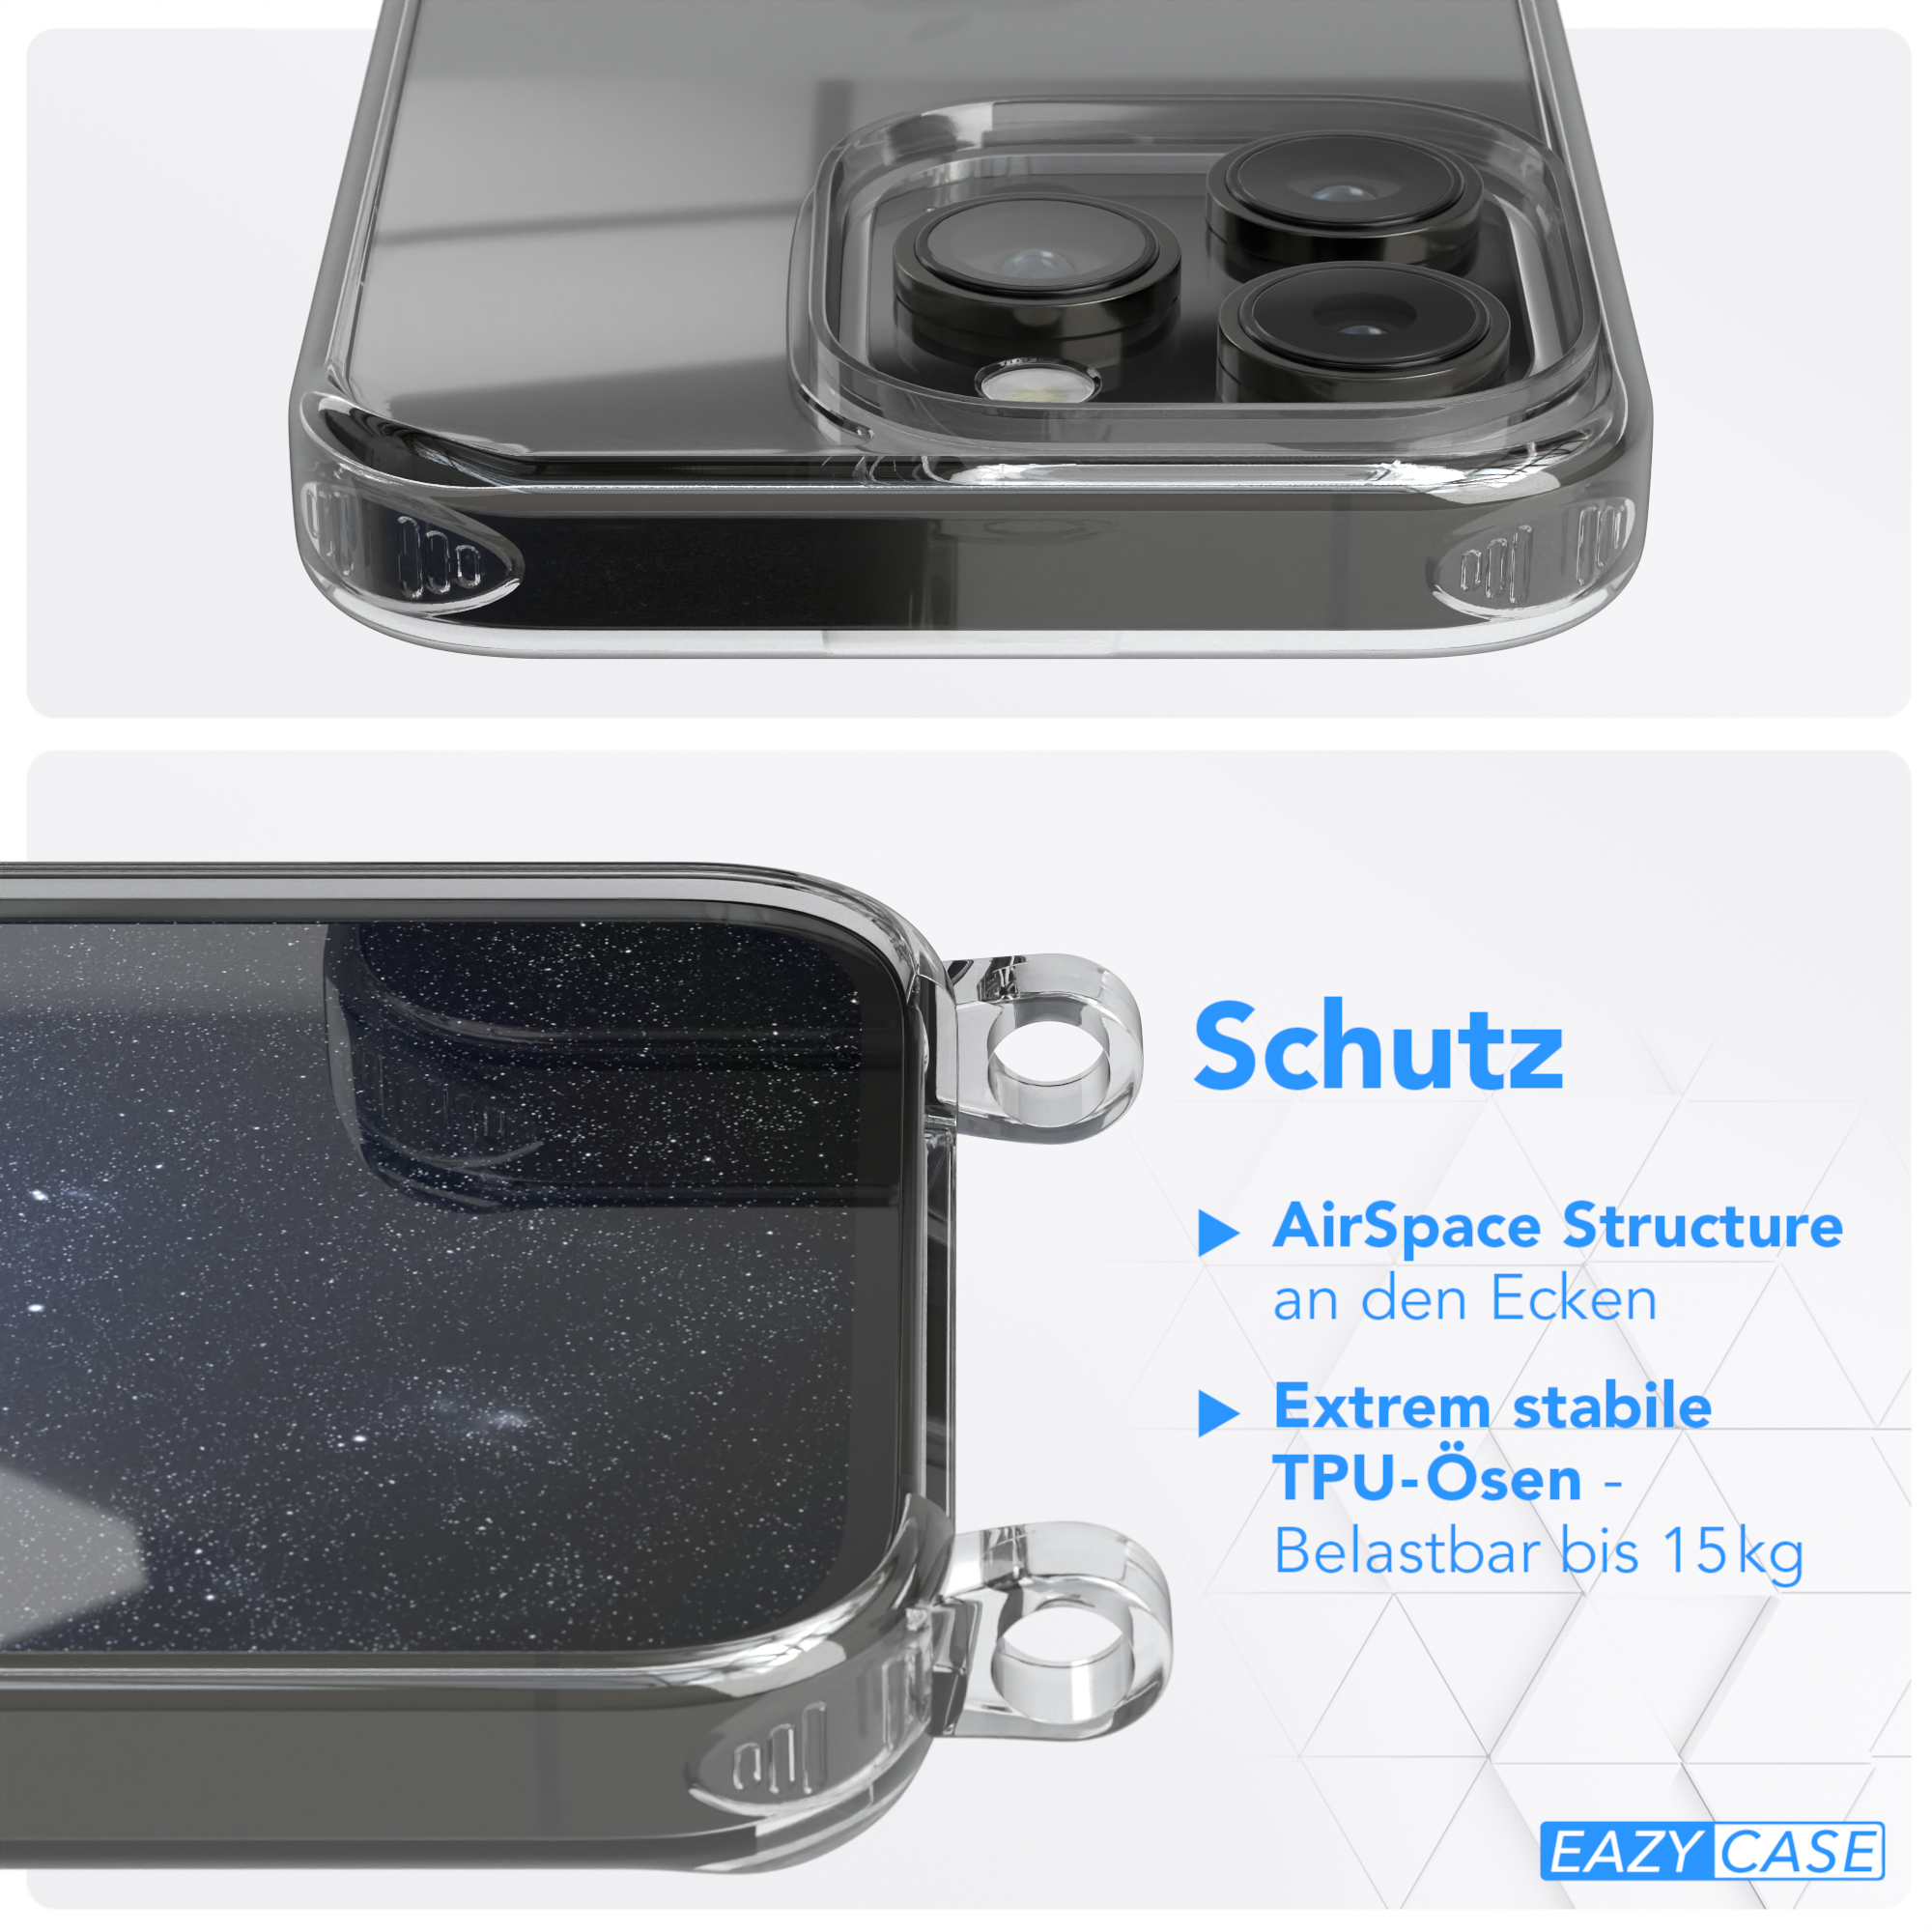 Umhängetasche, EAZY unifarbend, Nachtblau 14 Kette runder Handyhülle mit iPhone Transparente CASE / Apple, Pro, Dunkelblau